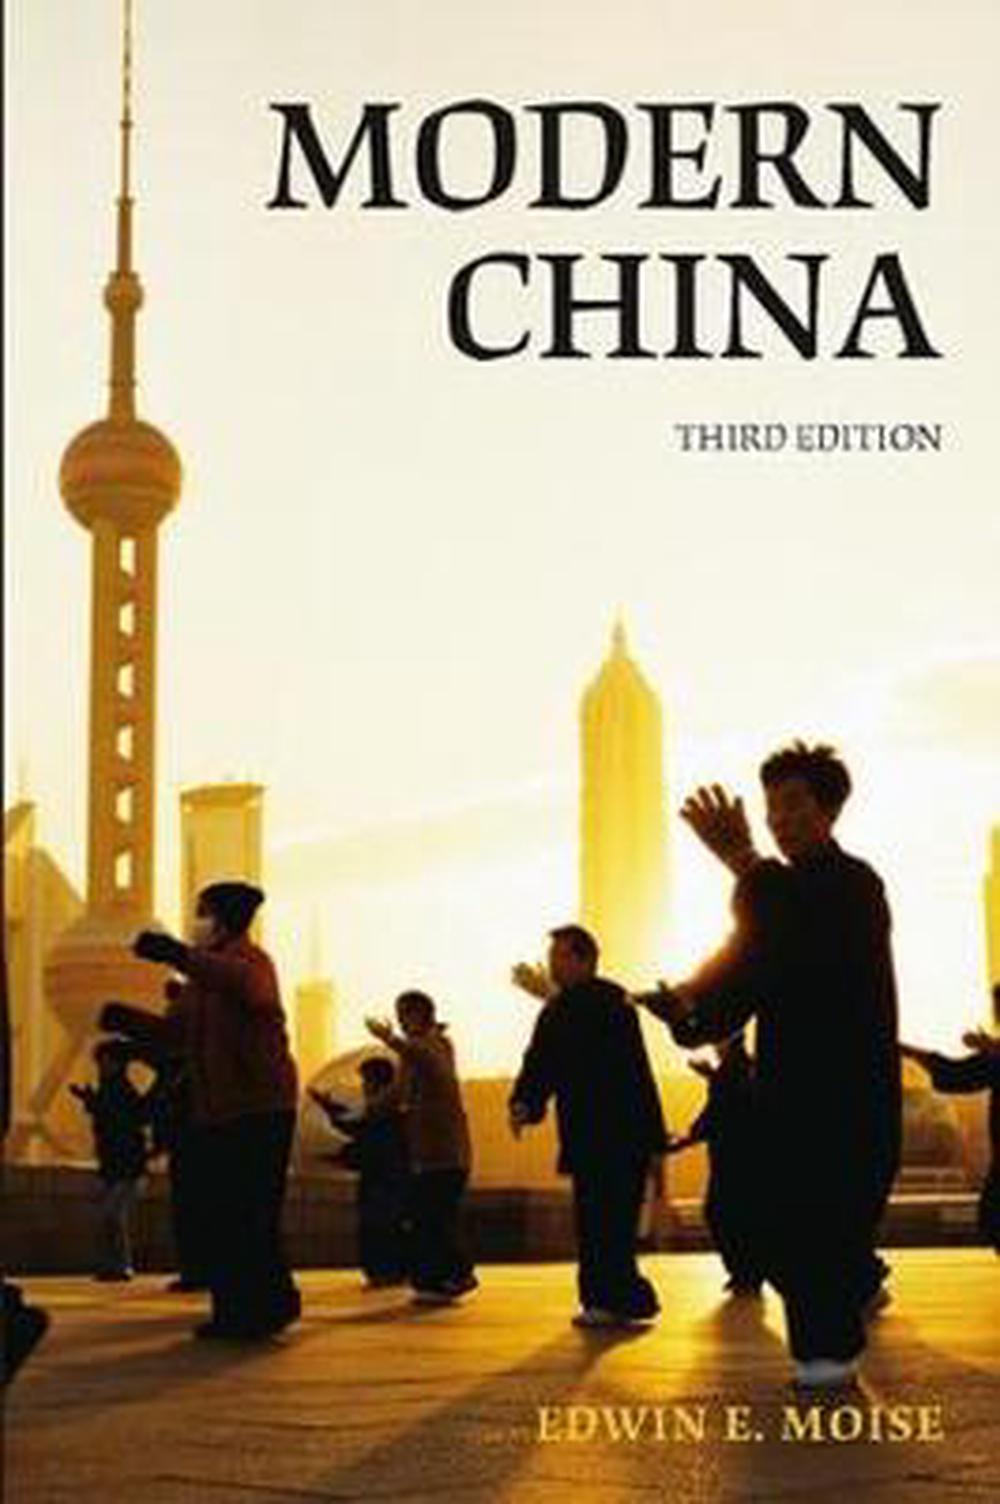 China in Disintegration by James Edward Sheridan